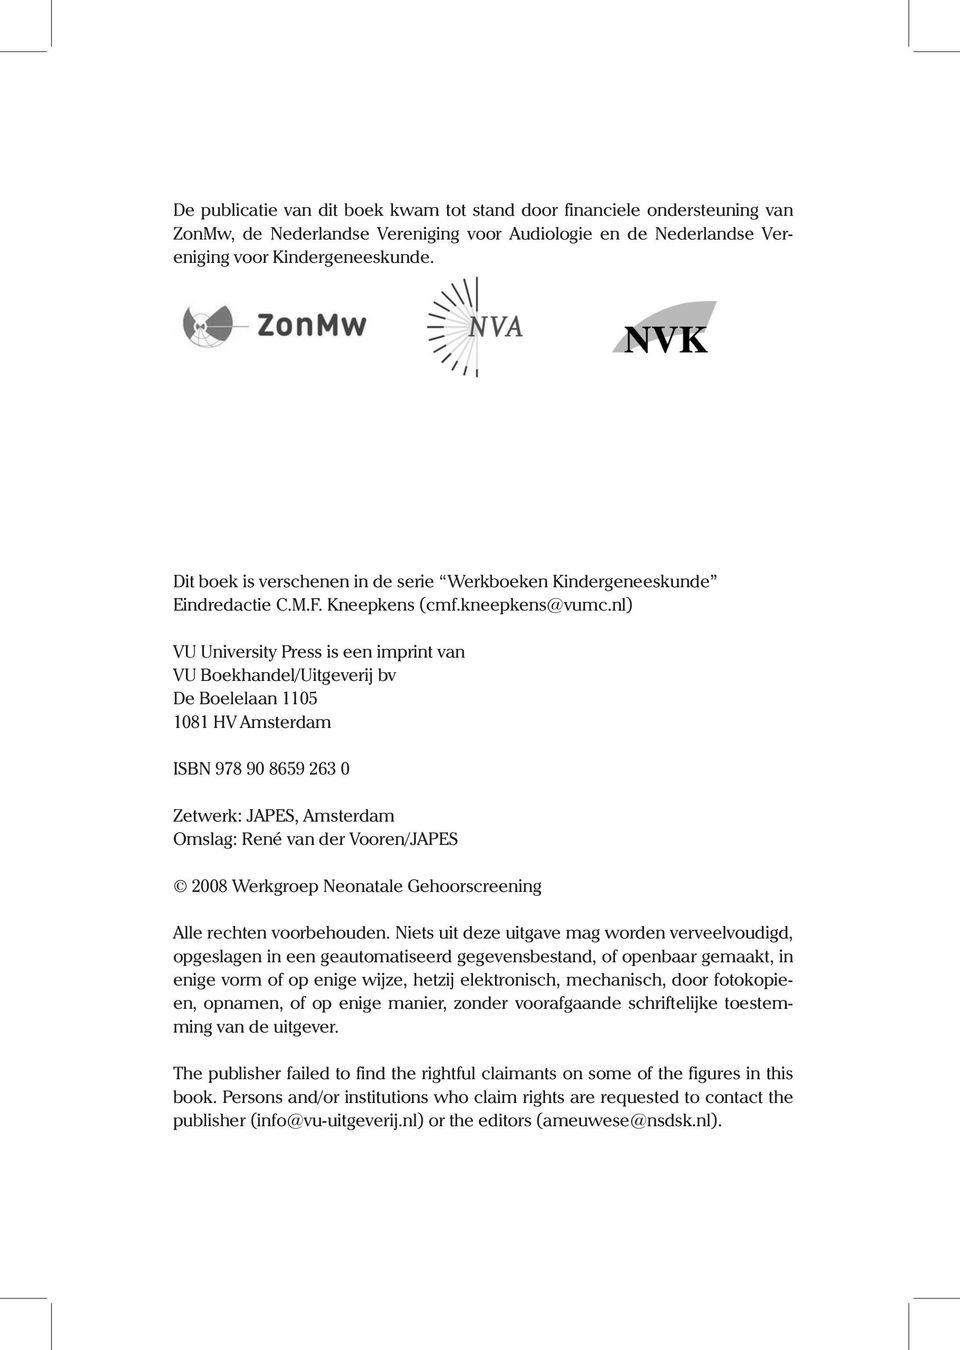 nl) VU University Press is een imprint van VU Boekhandel/Uitgeverij bv De Boelelaan 1105 1081 HV Amsterdam ISBN 978 90 8659 263 0 Zetwerk: JAPES, Amsterdam Omslag: René van der Vooren/JAPES 2008